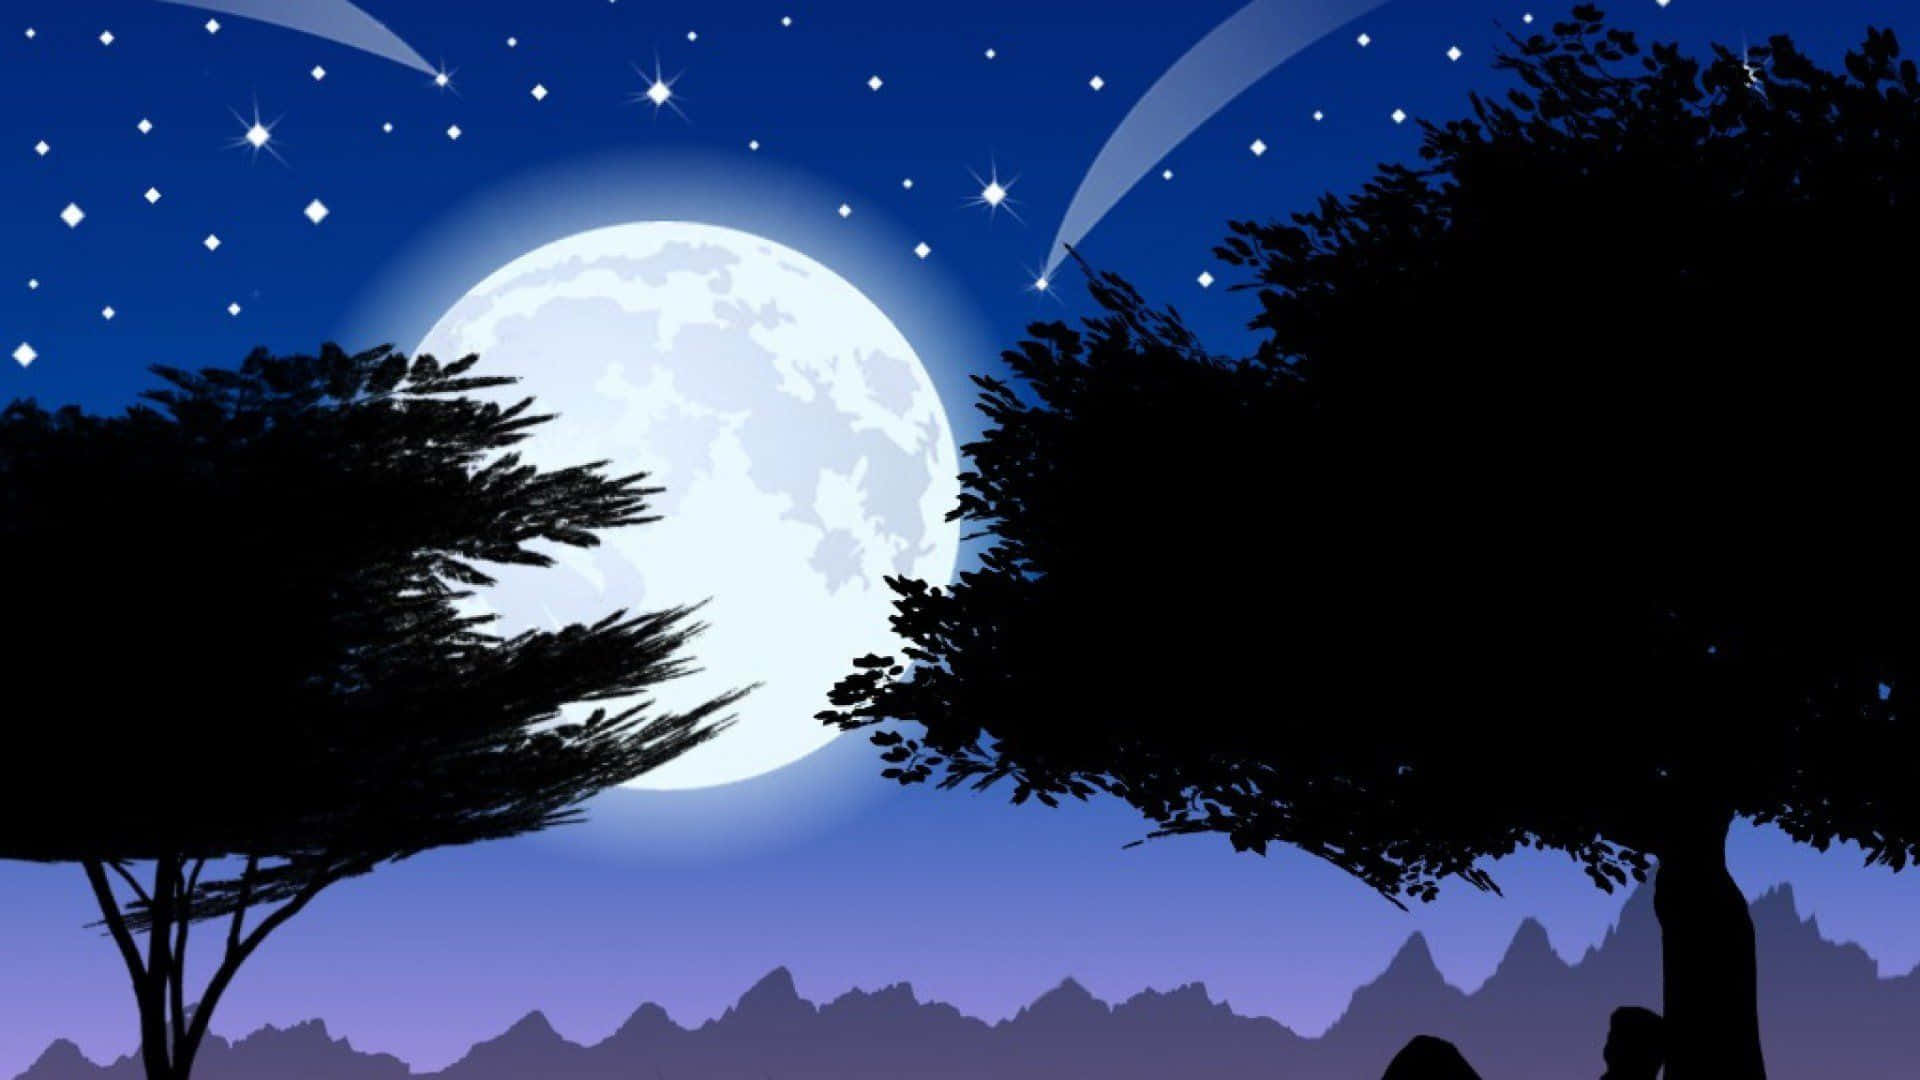 Enchanting Moonlit Night